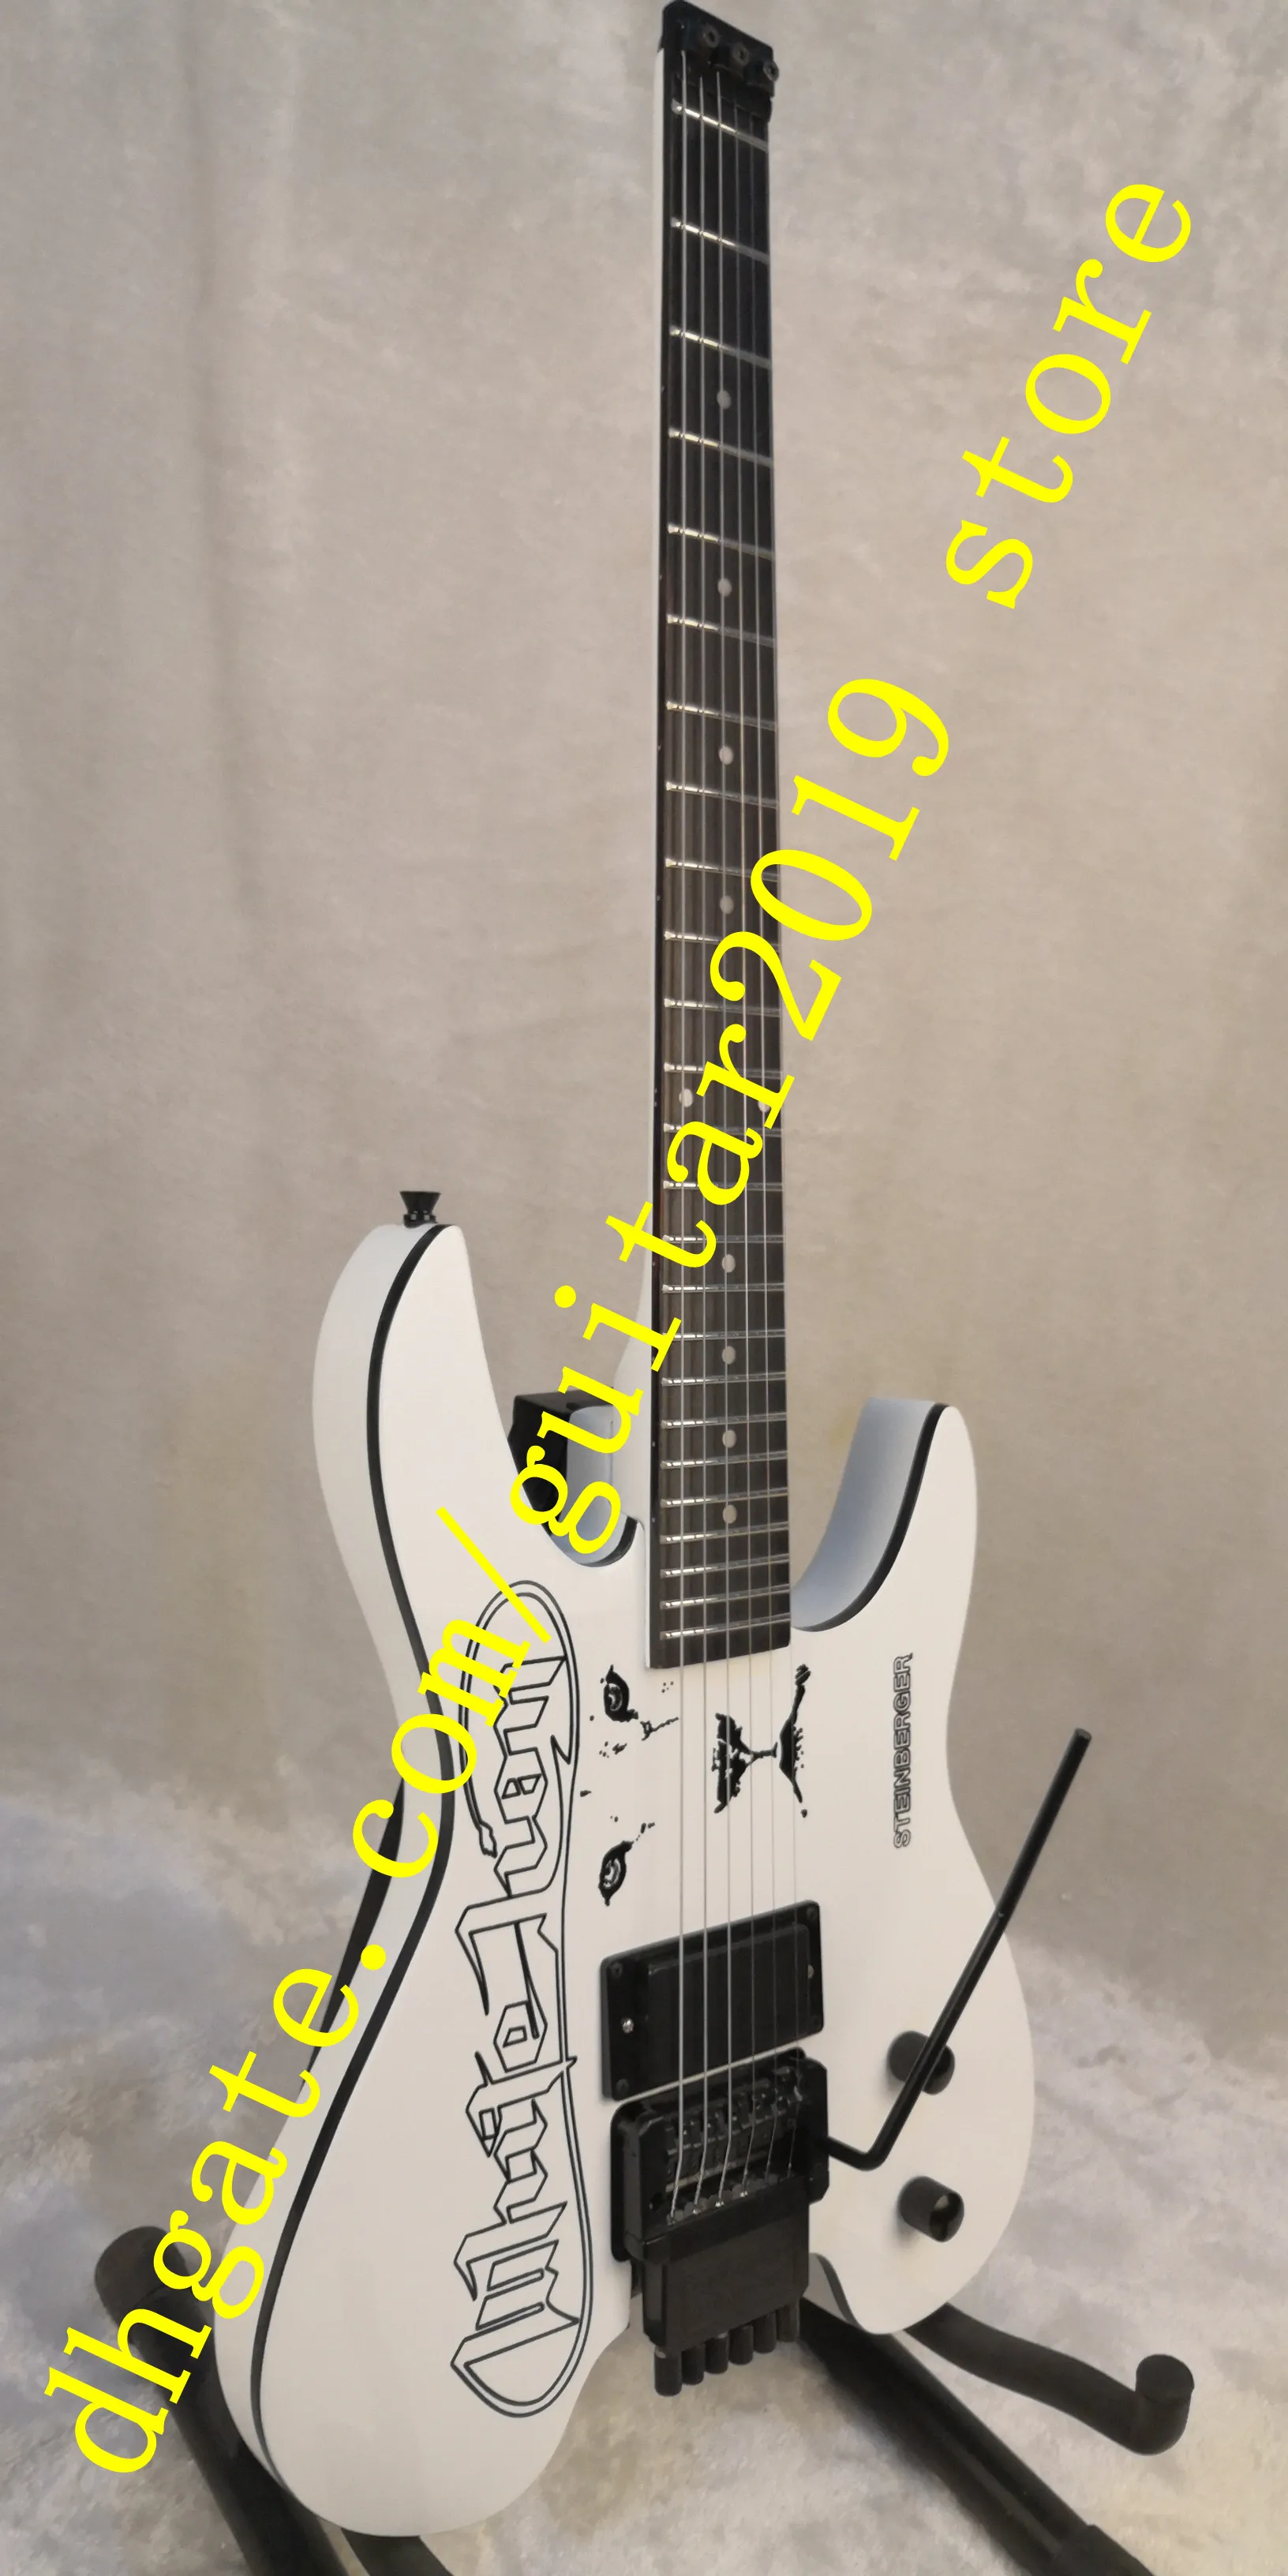 白いボディと首のライオンヘッドレスエレクトリックギターとローズウッドフレットボードブラックハードウェア送料無料